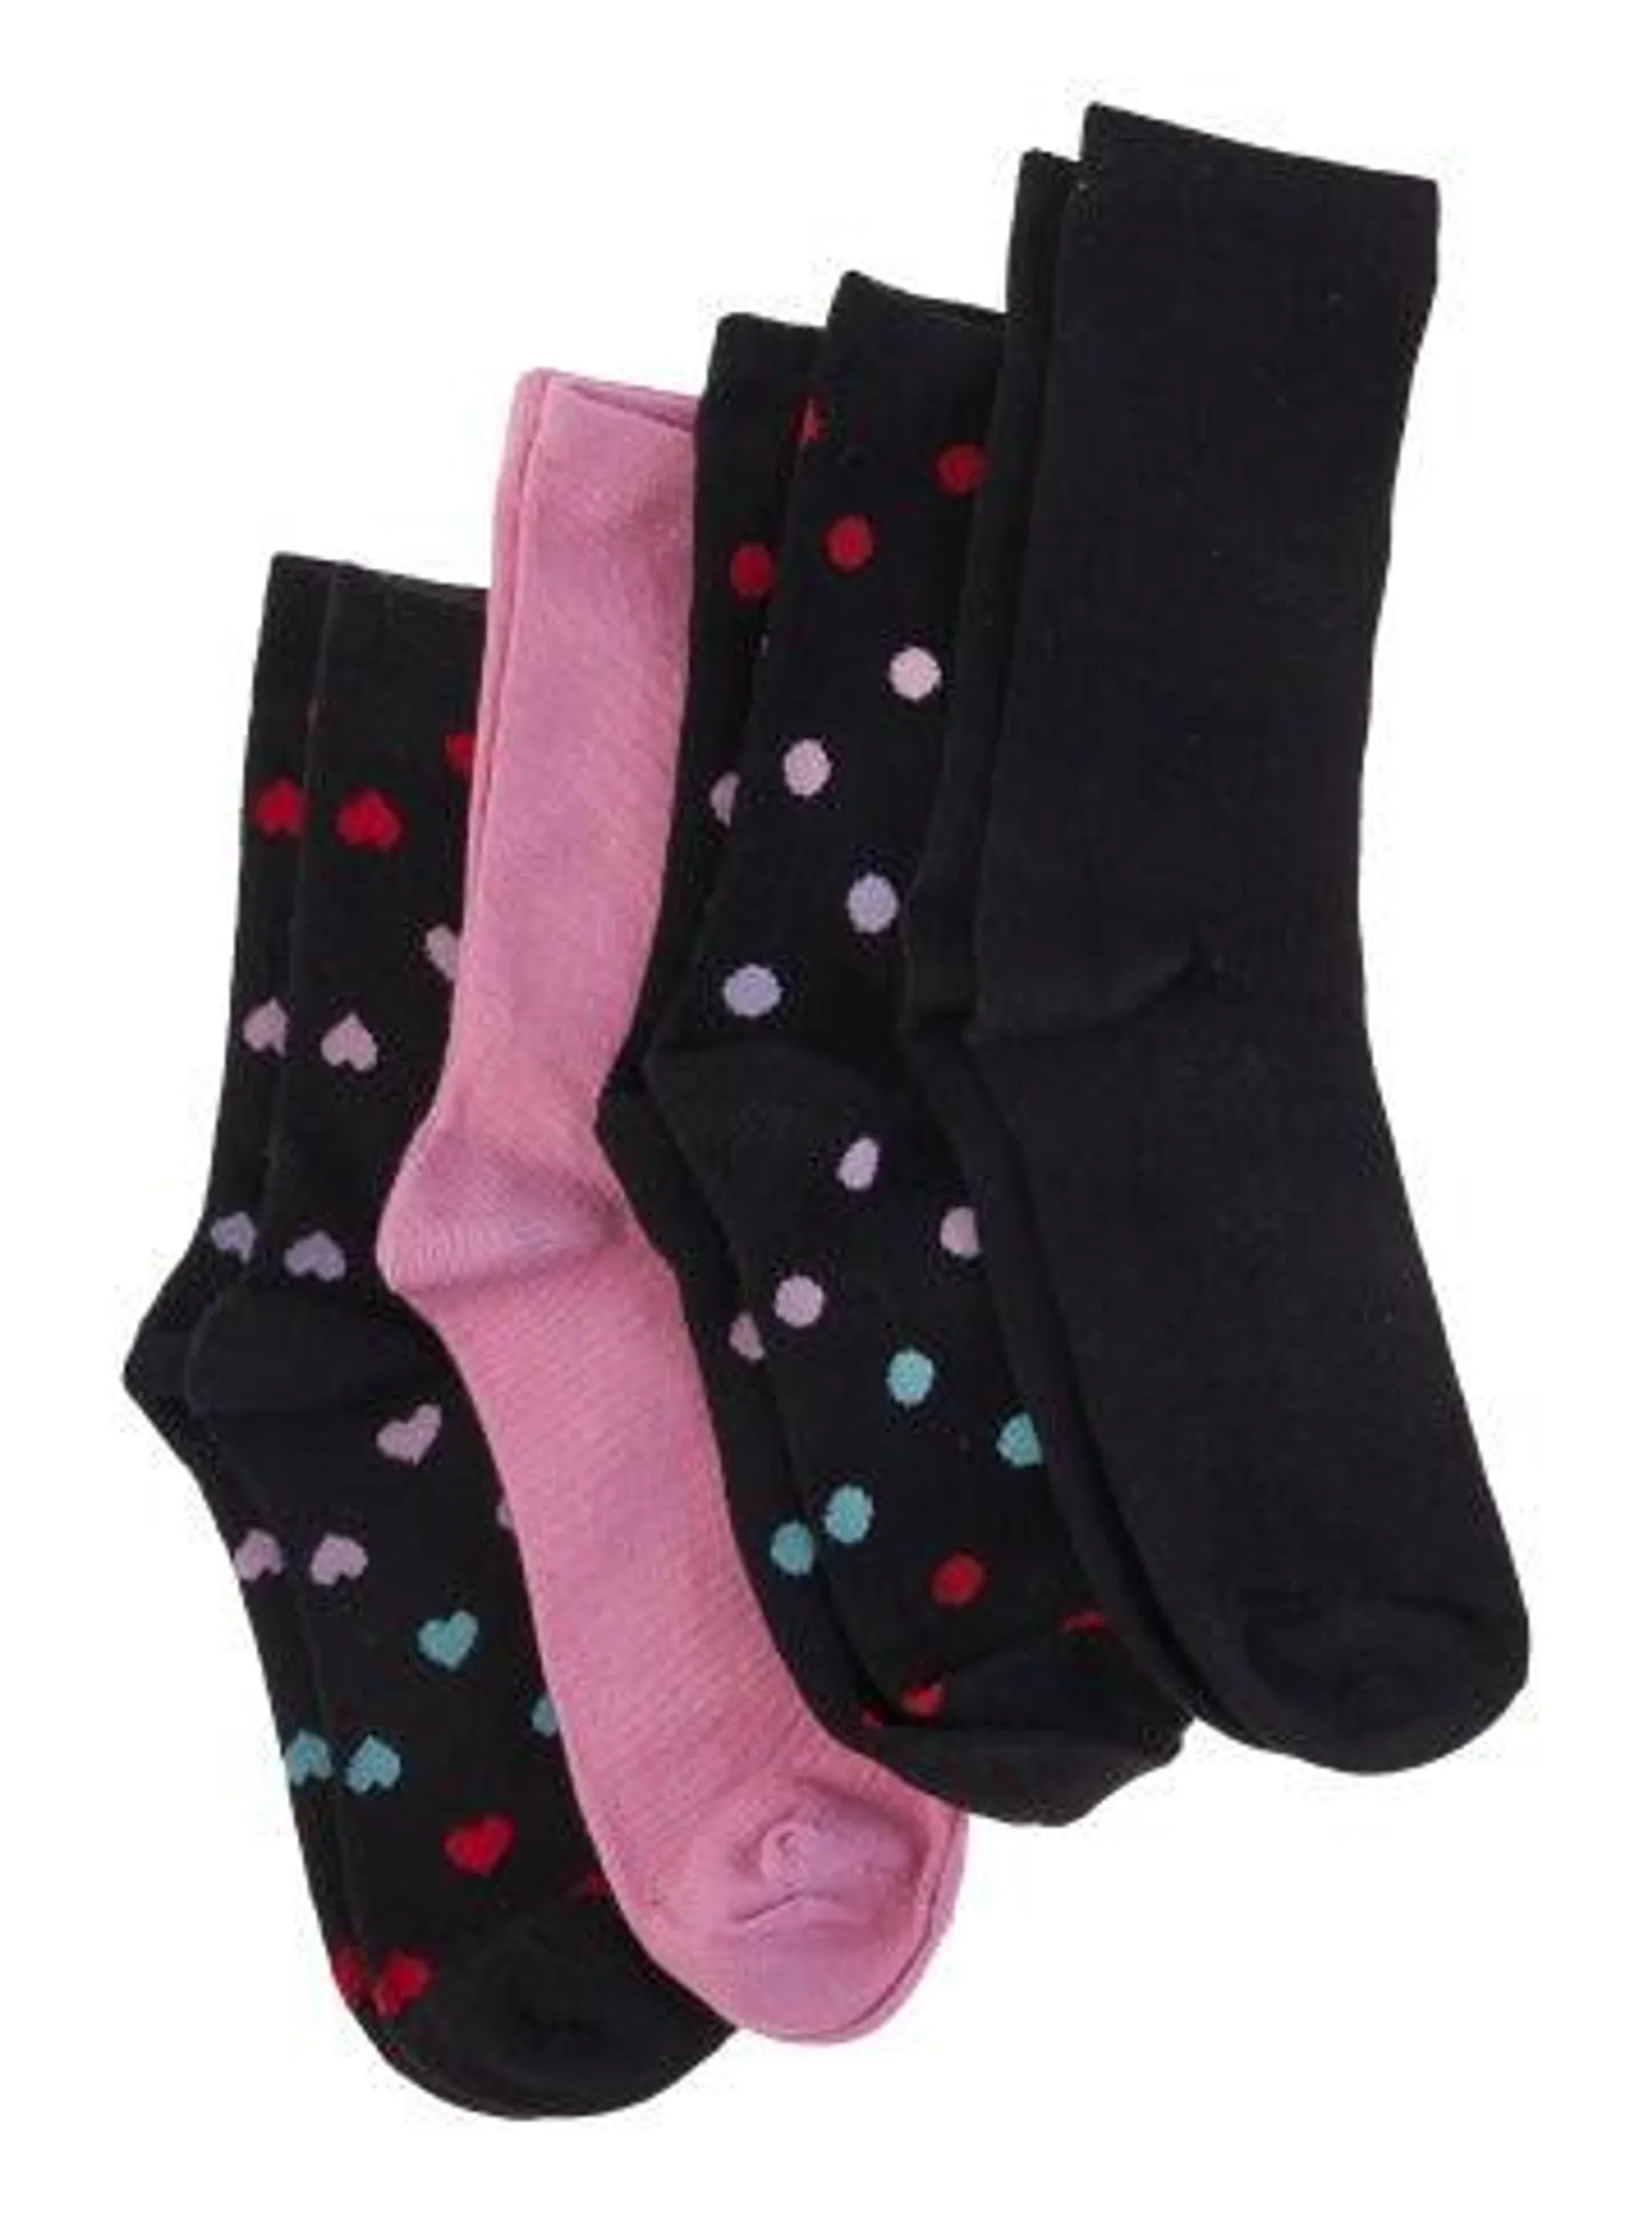 Women's 4 Pack Crew Socks in Multi Hearts/spots